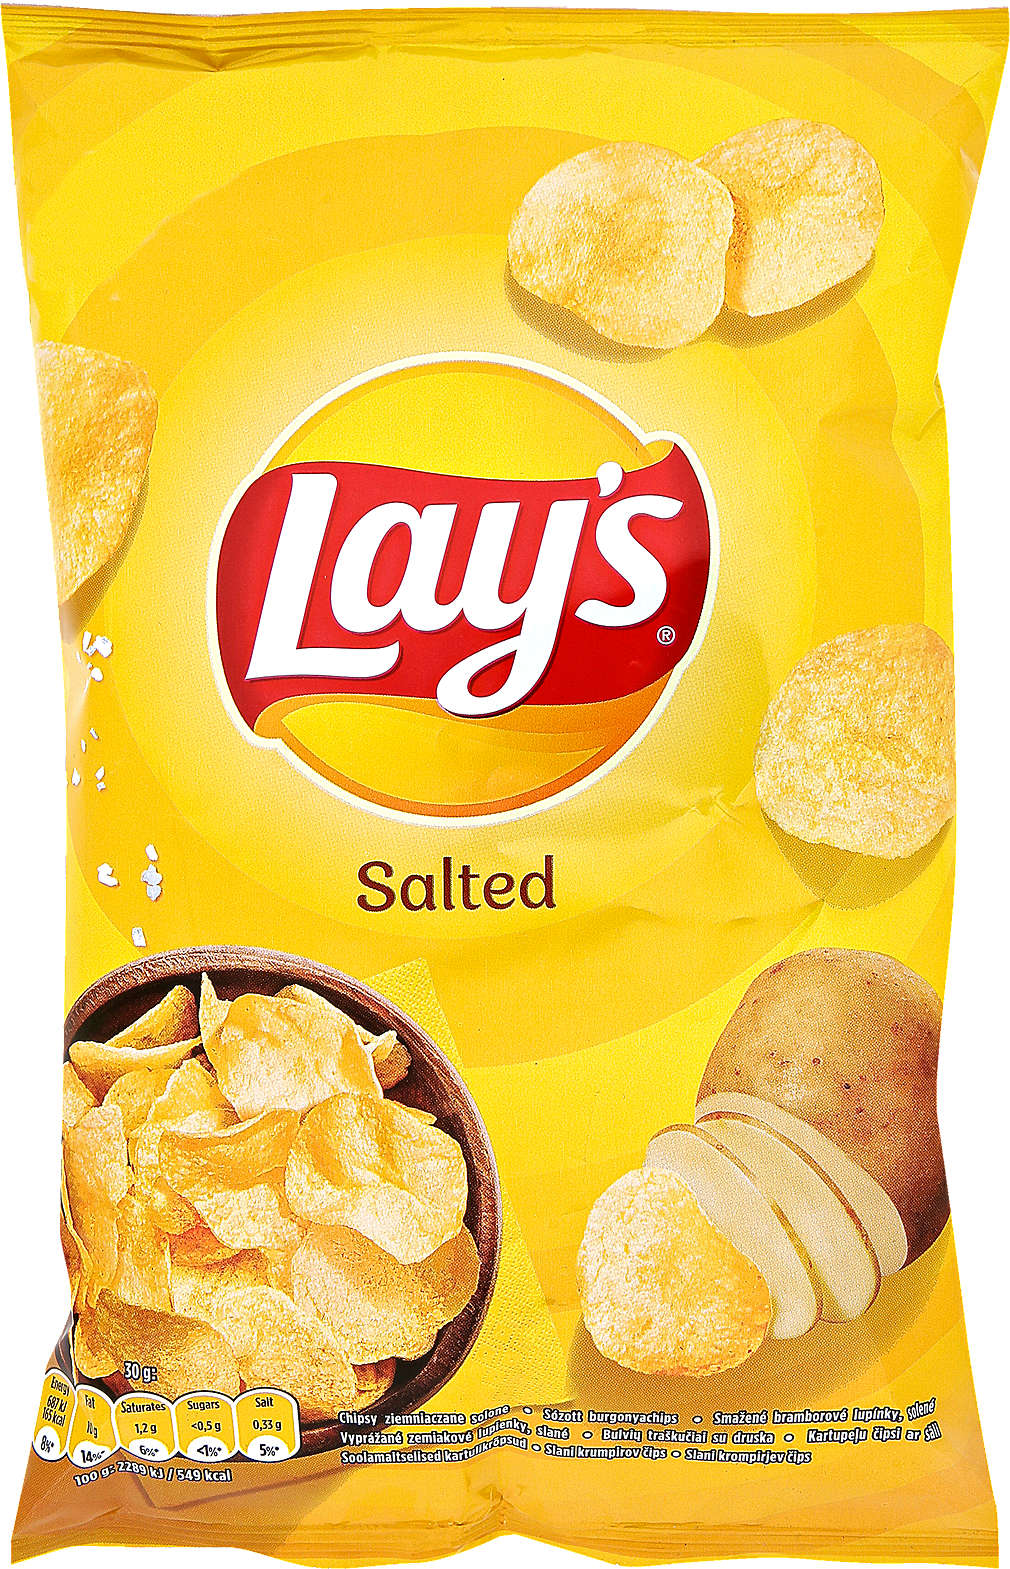 Zobrazit nabídku Lay's Chipsy